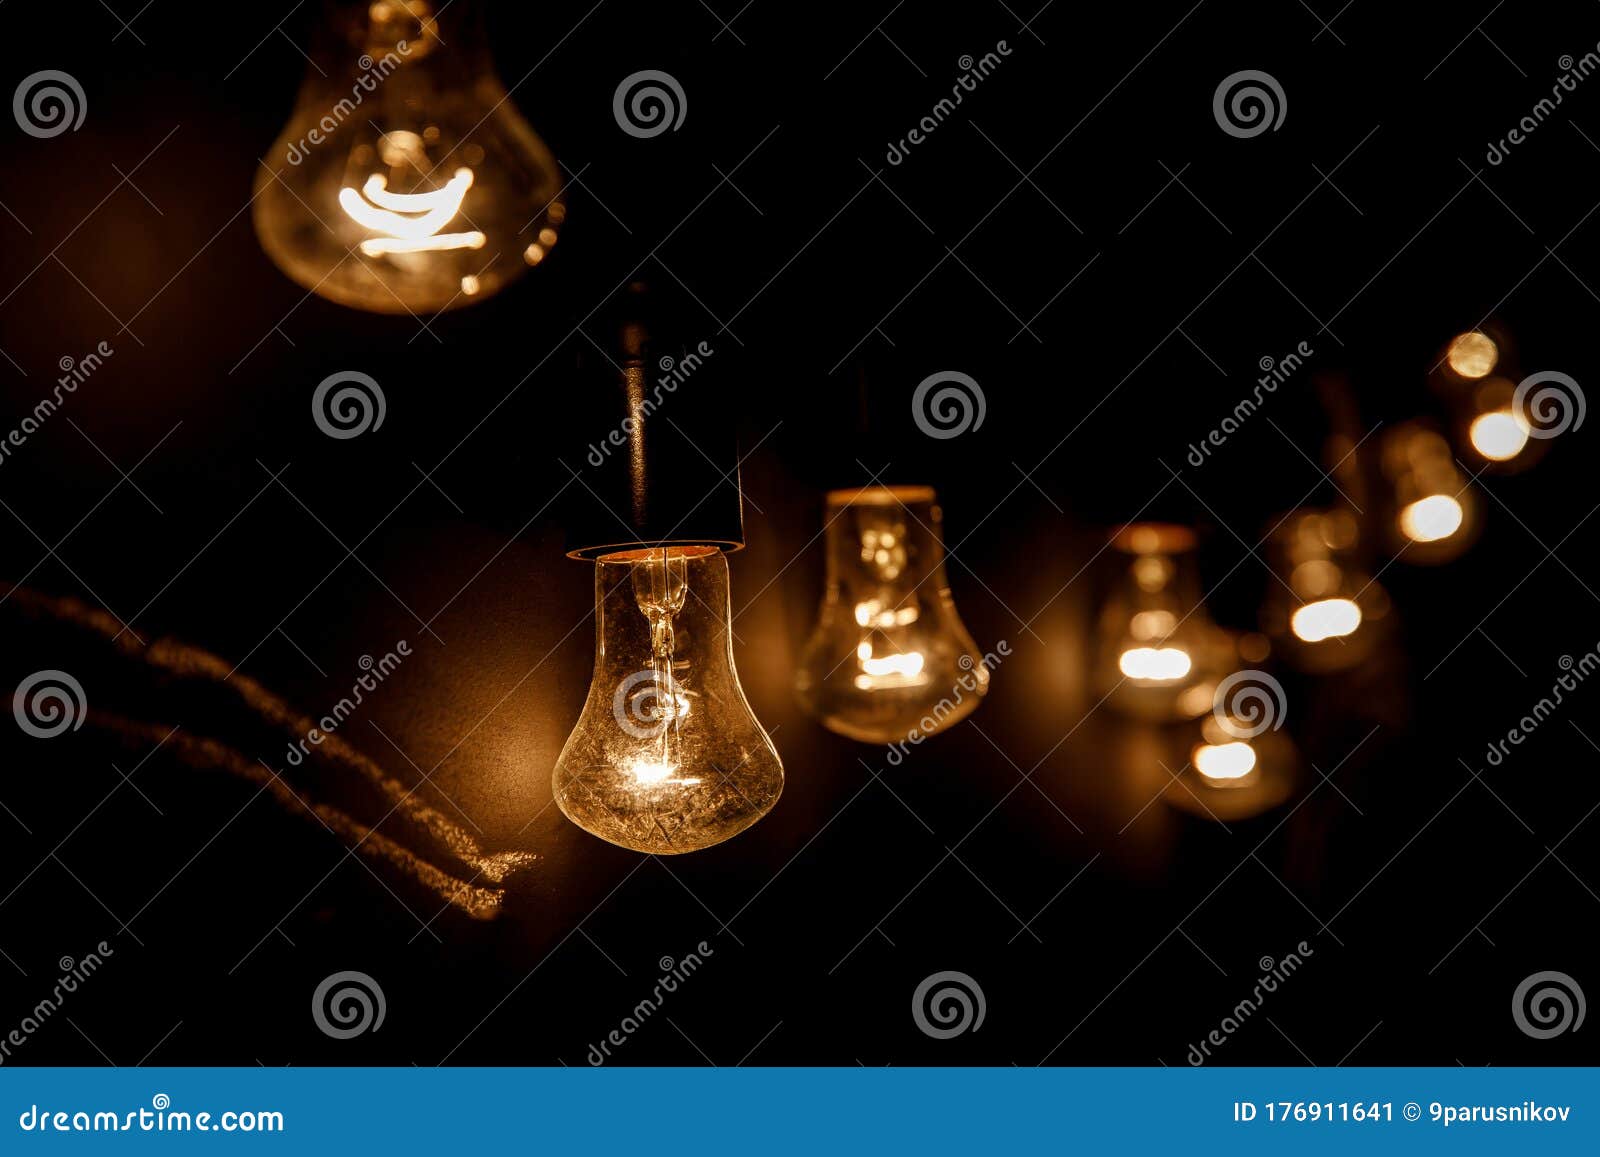 a row of light bulbs. focus on the closest